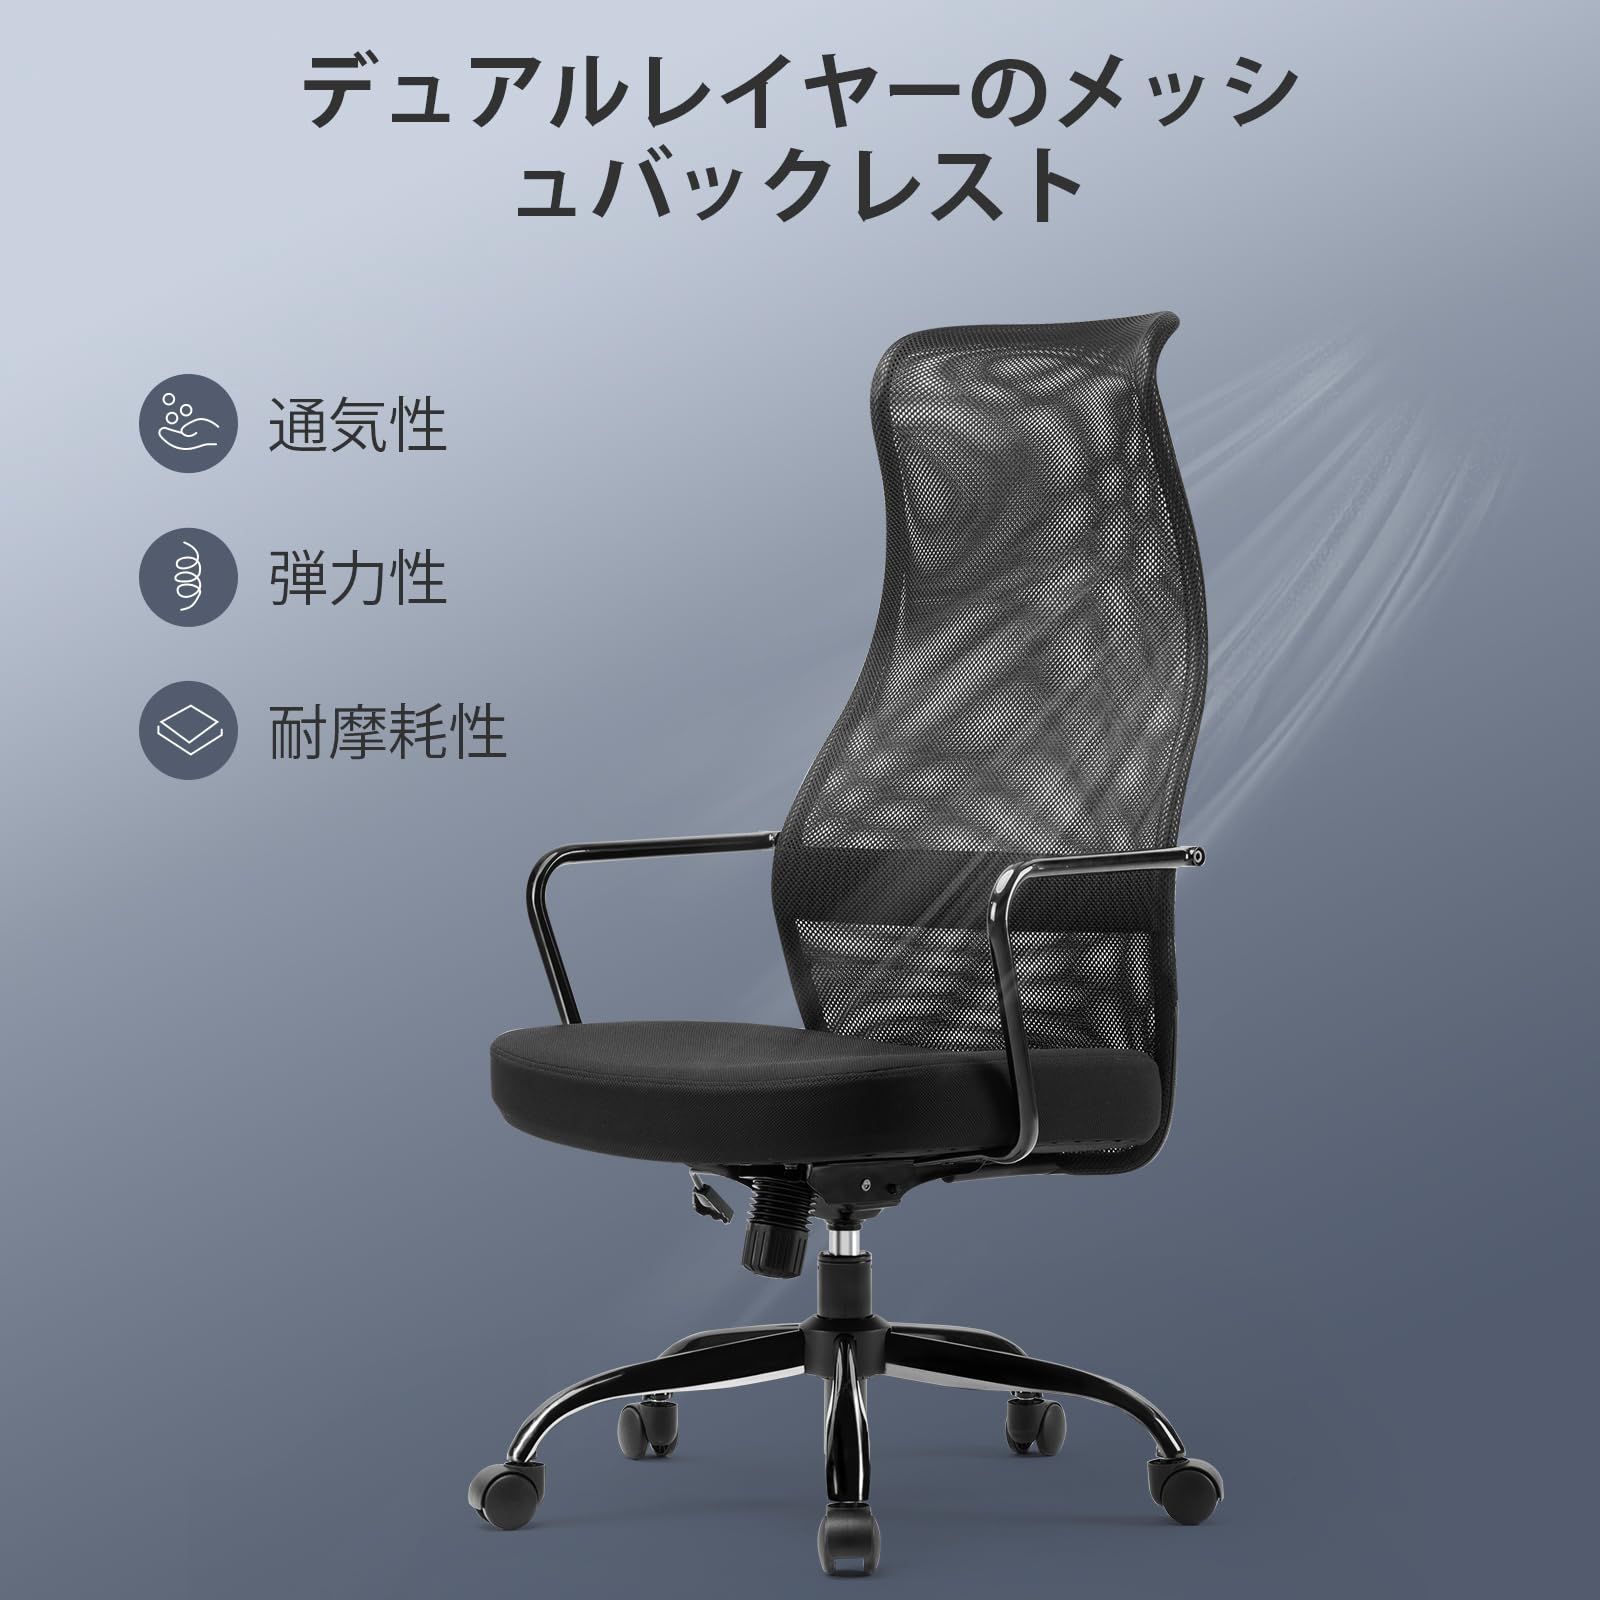 【色: イエロー】SIHOO オフィスチェア 椅子 デスクチェ 椅子 テレワークオフィス家具